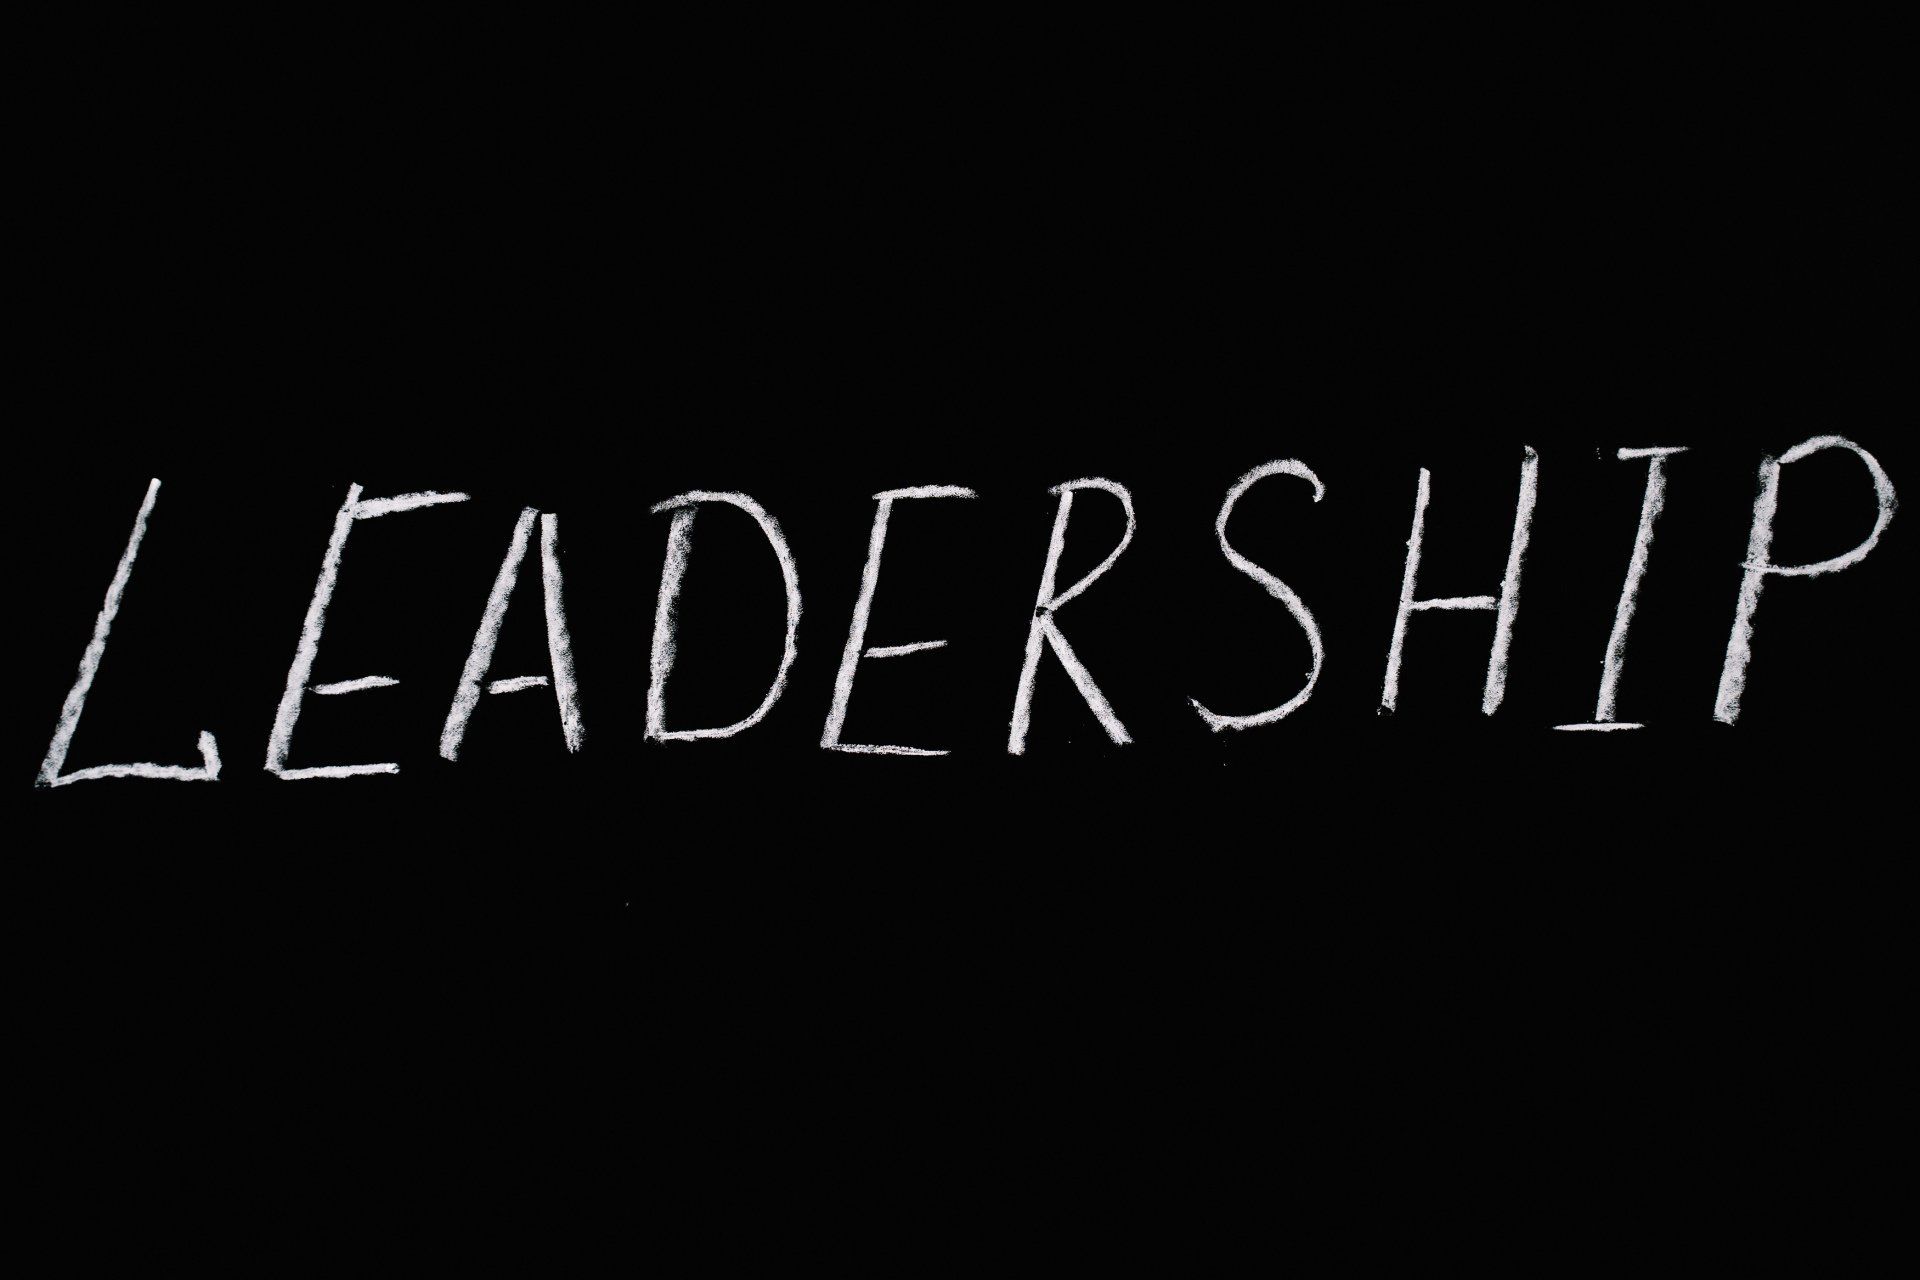 Leadership written on chalkboard